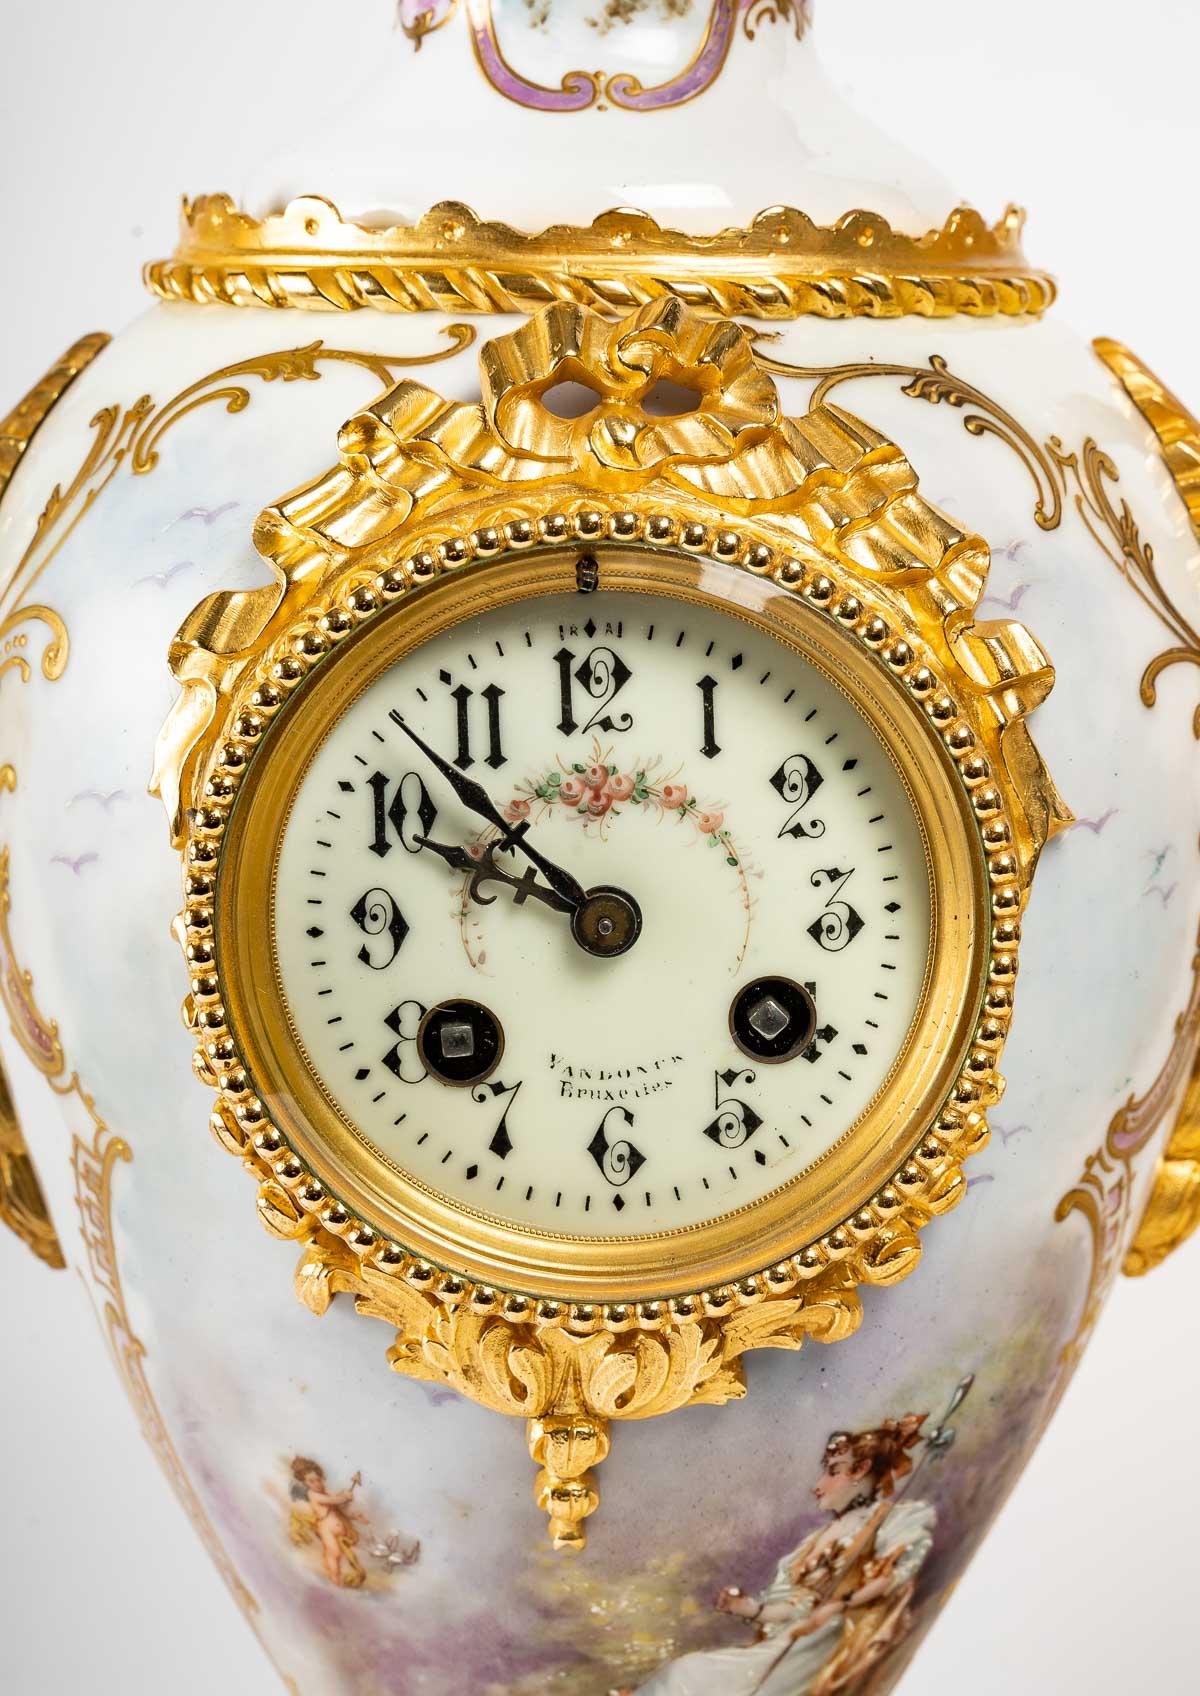 Sèvres porcelain mantel set, 19th century.

A Sèvres porcelain and gilt bronze mantelpiece, Napoleon III period, 19th century.

Measures: clock - H: 56 cm, W: 25 cm, D: 21 cm.

vase - H: 52 cm, W: 18 cm, D: 15 cm.

ref 3306